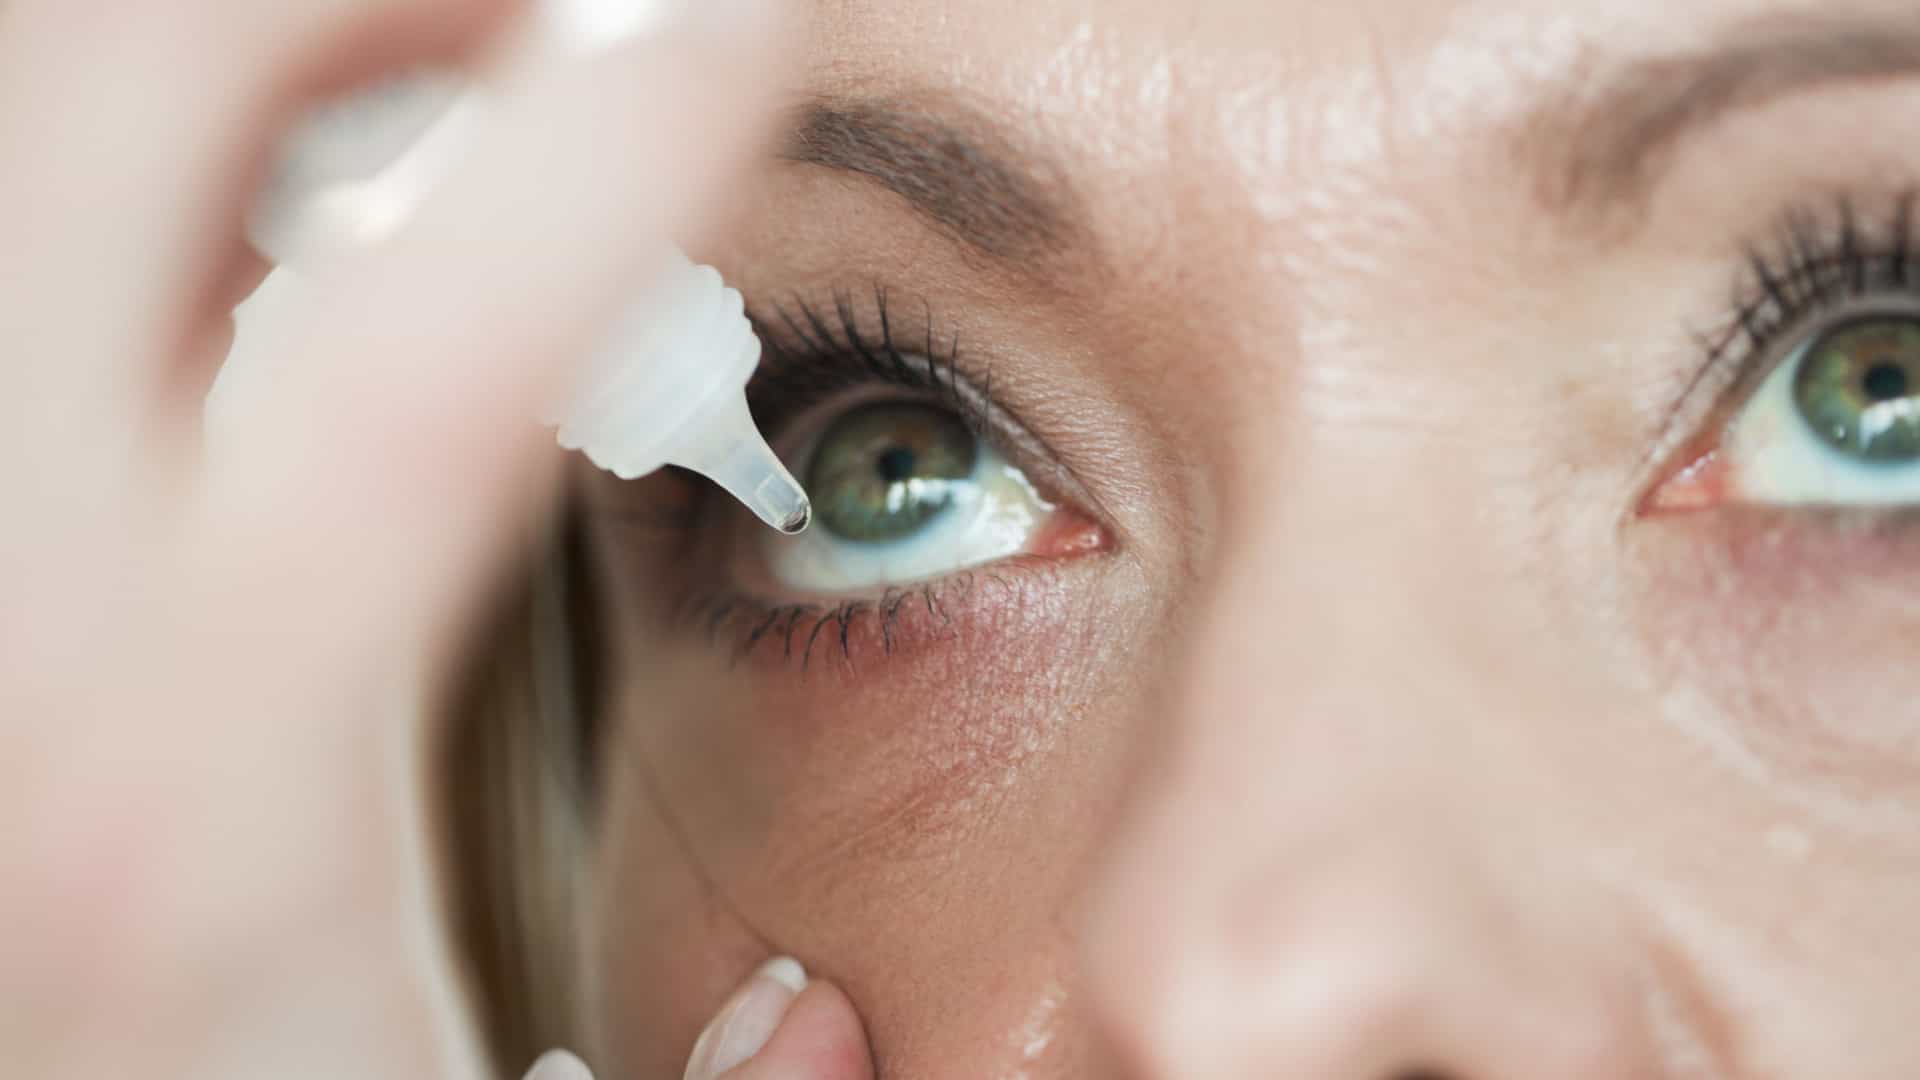 Sndrome do Olho Seco se caracteriza pela falta de lubrificao nos olhos. Foto: Reproduo da internet